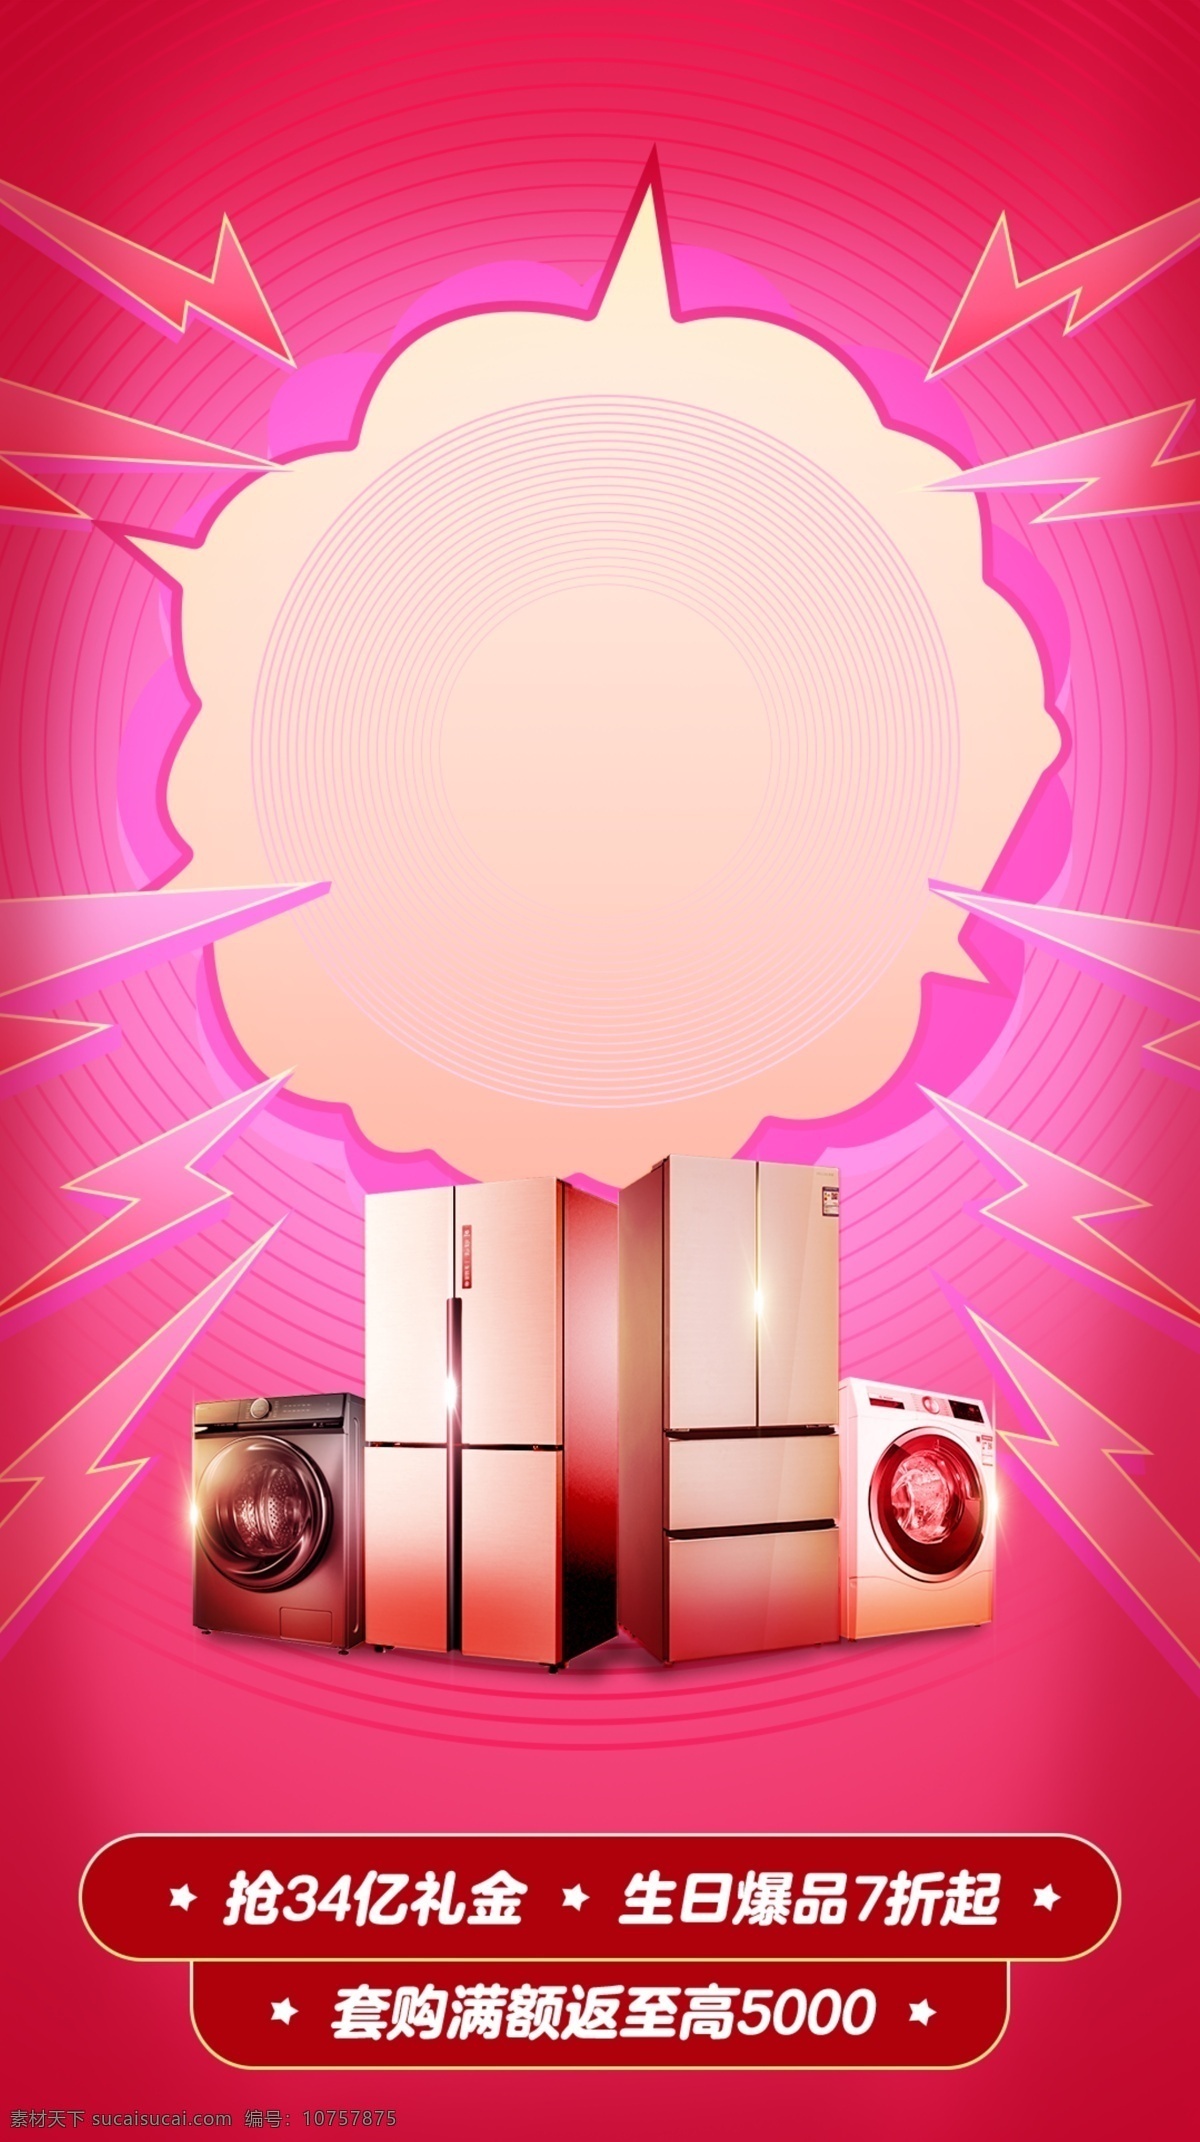 粉色背景图片 粉色背景 云团 爆炸 粉红背景 闪电 电器 发光背景